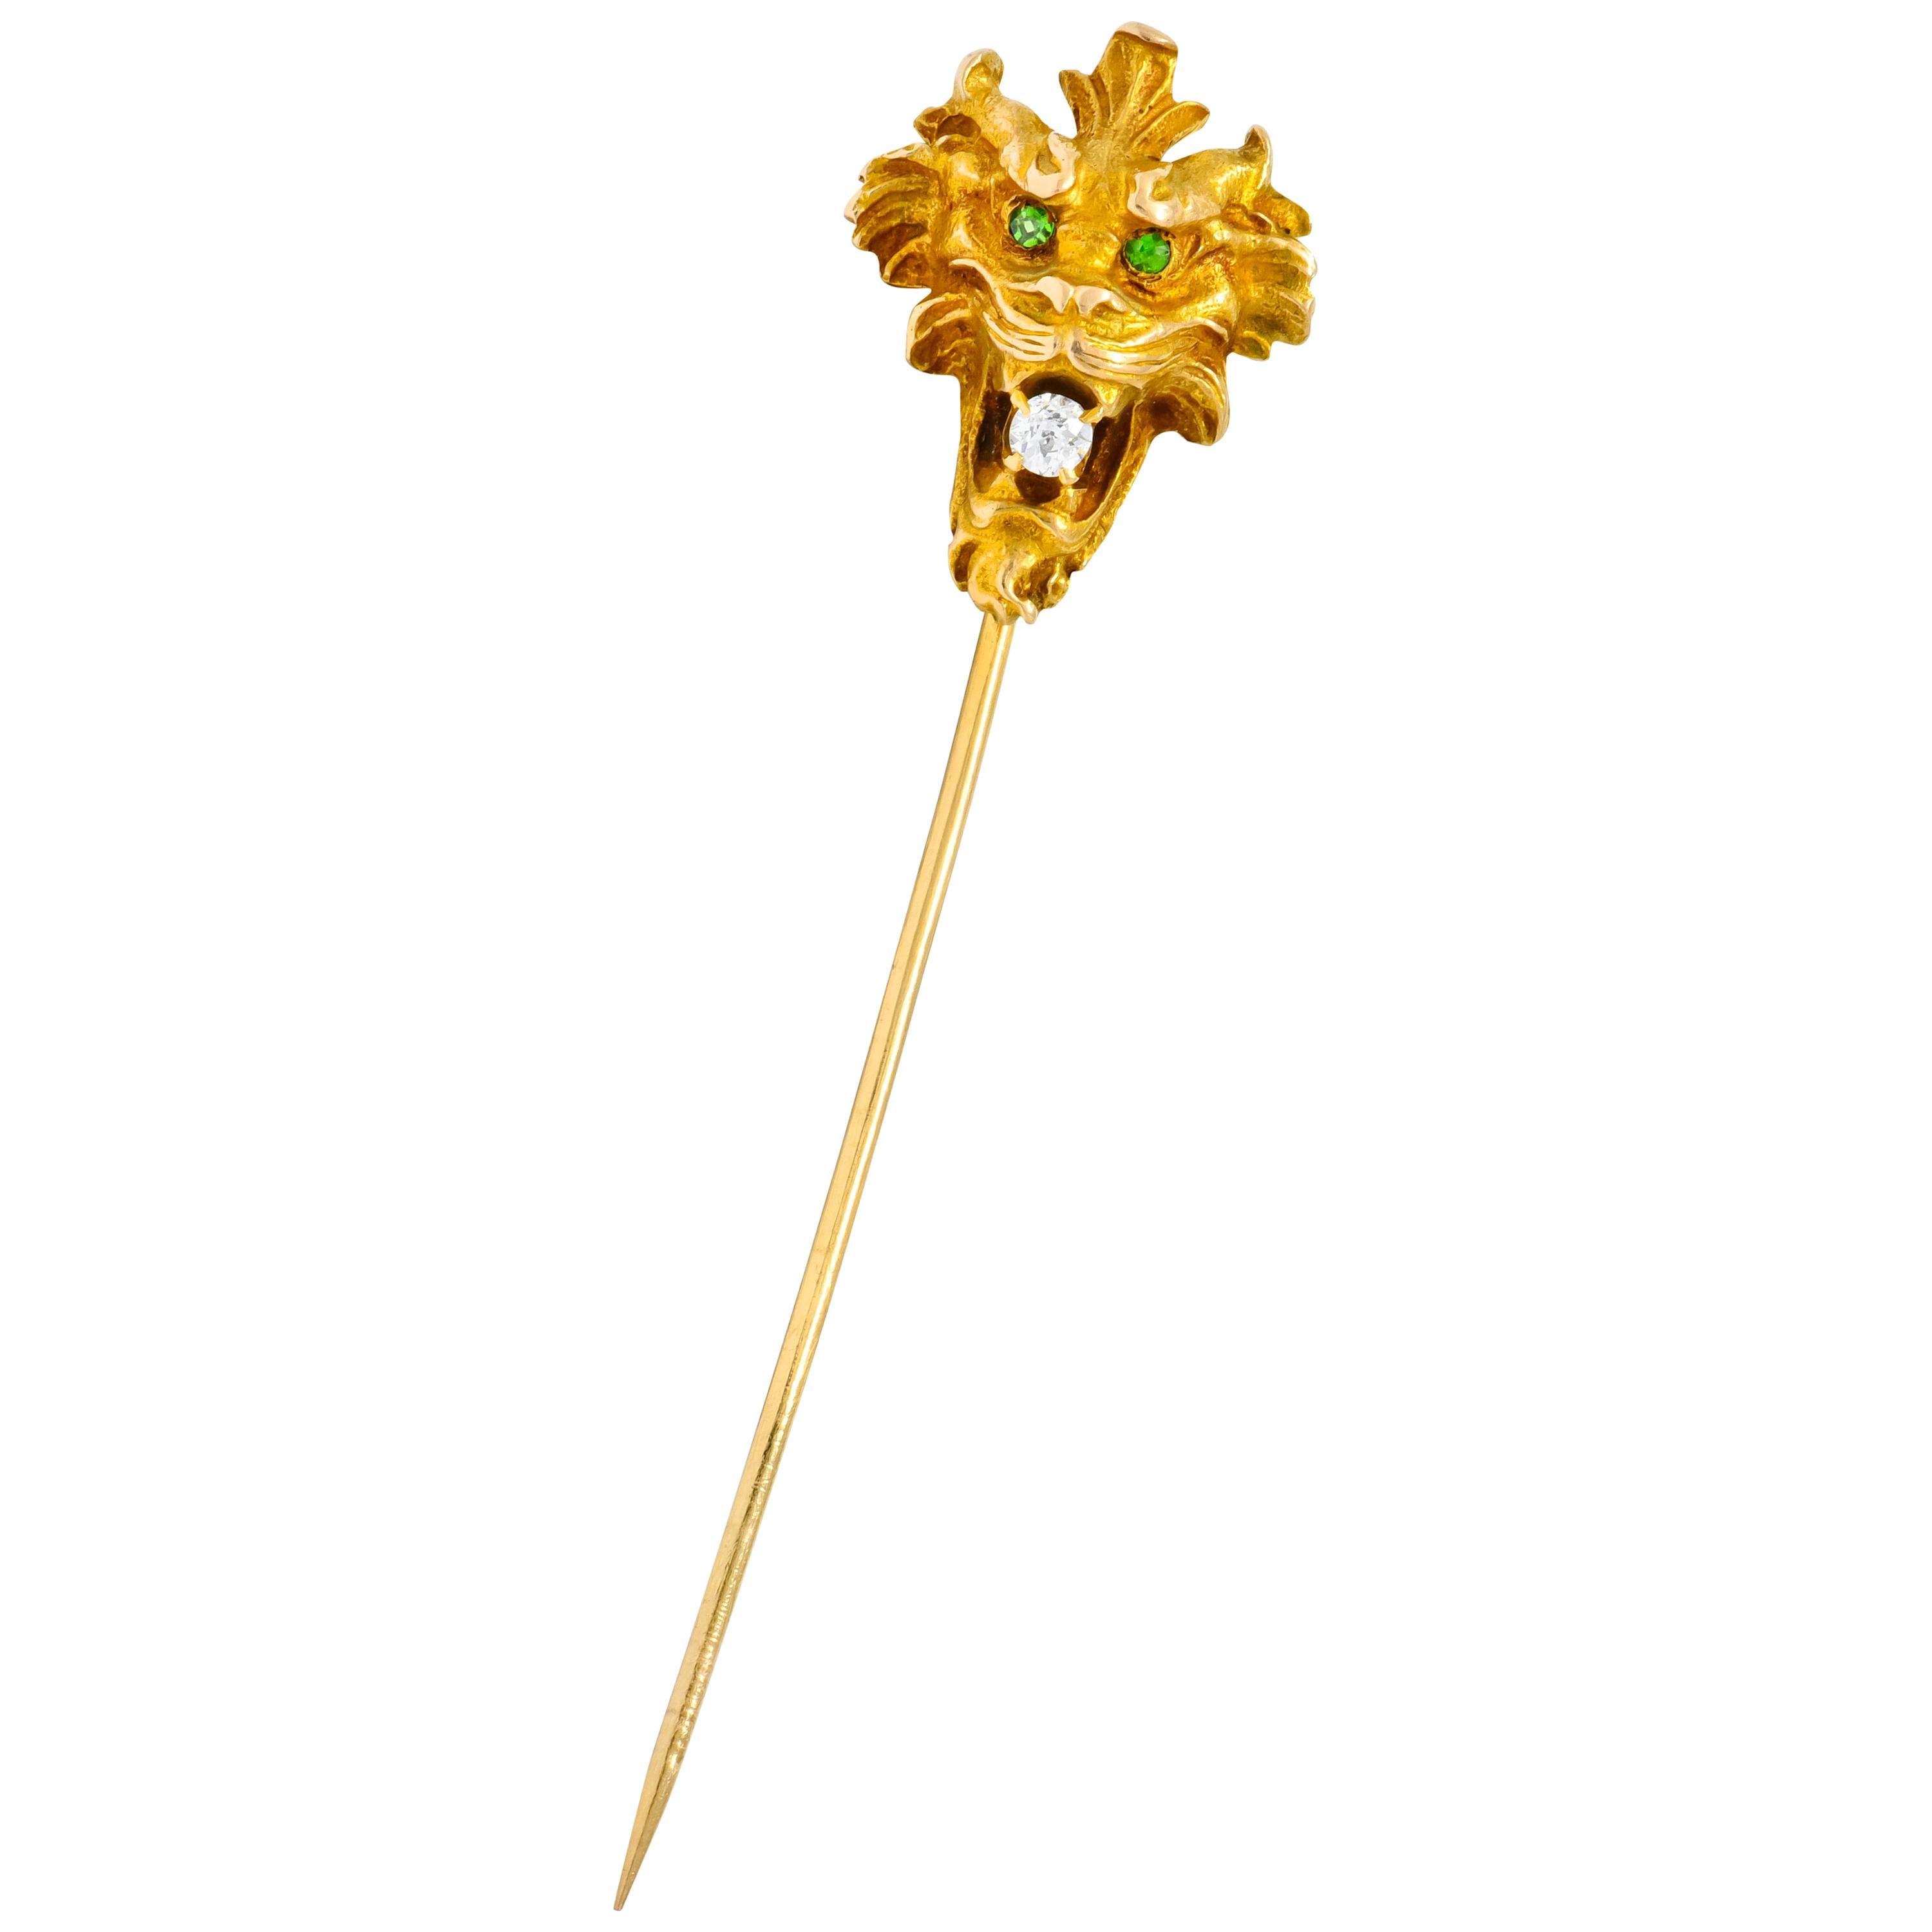 Wordley Alsopp & Bliss Diamond Demantoid Garnet 14 Karat Gold Tiger Stickpin